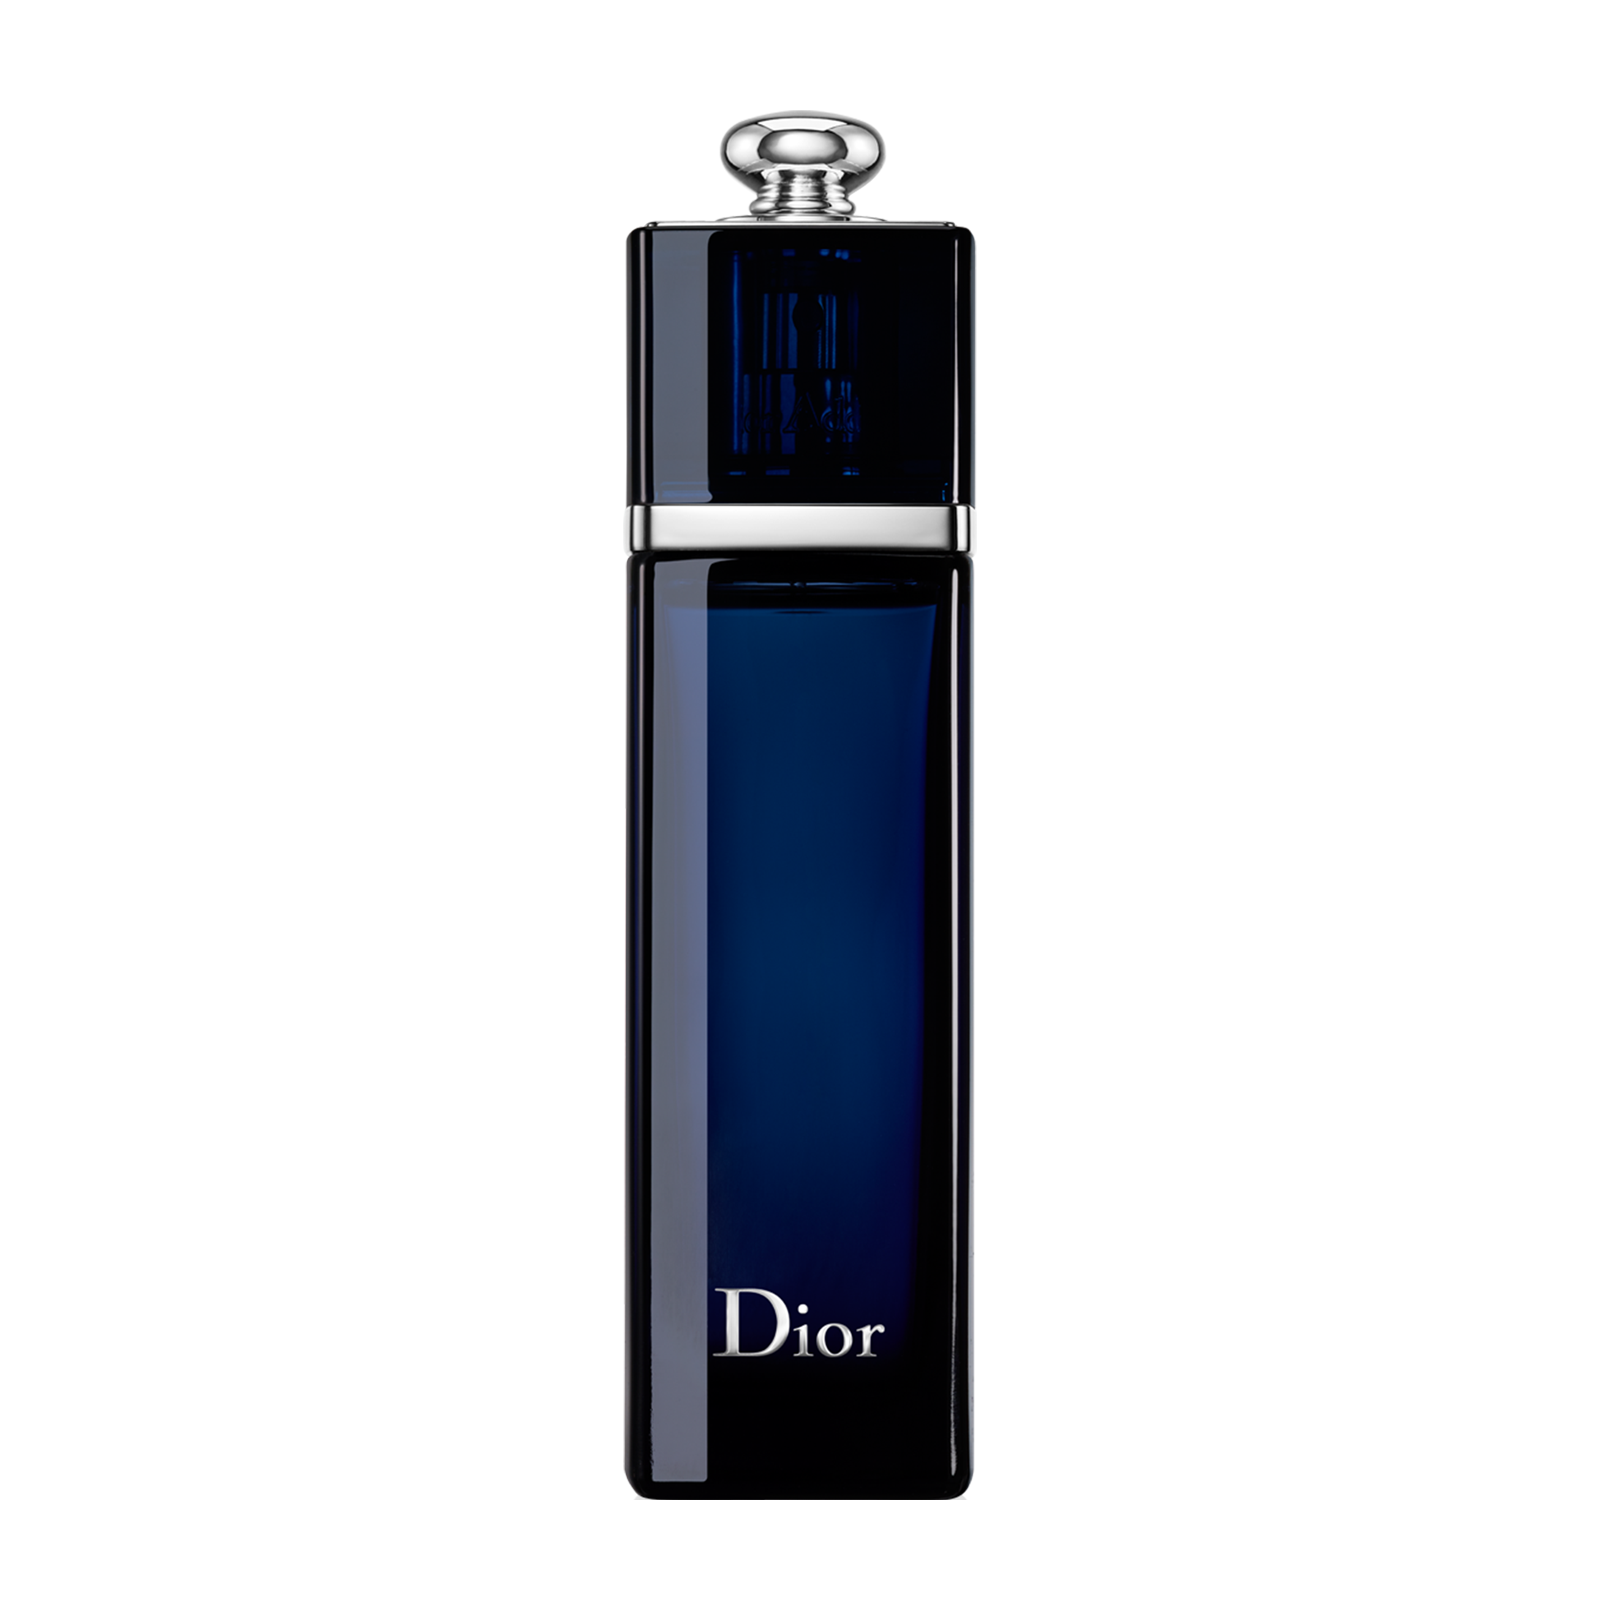 Parfum Dior Addict - Homecare24